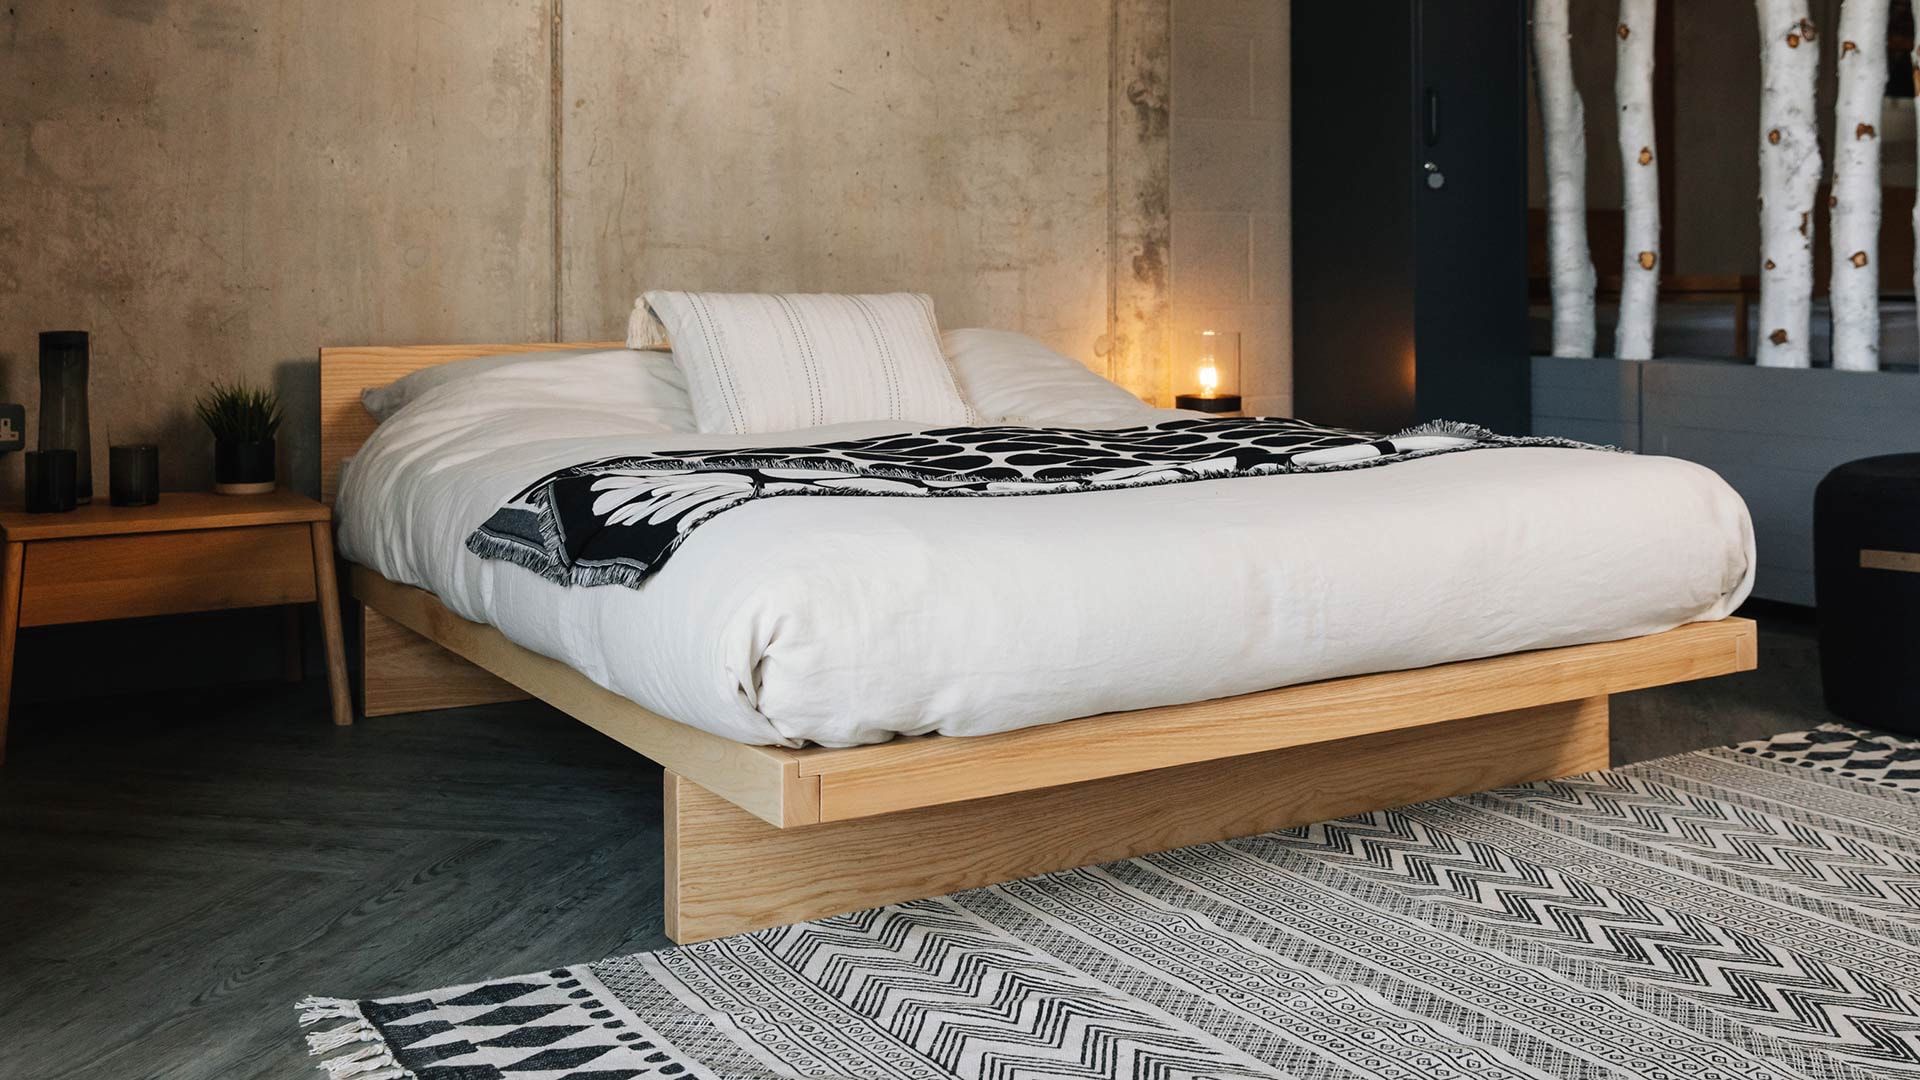 Thiết kế giường ngủ kiểu Nhật đẹp